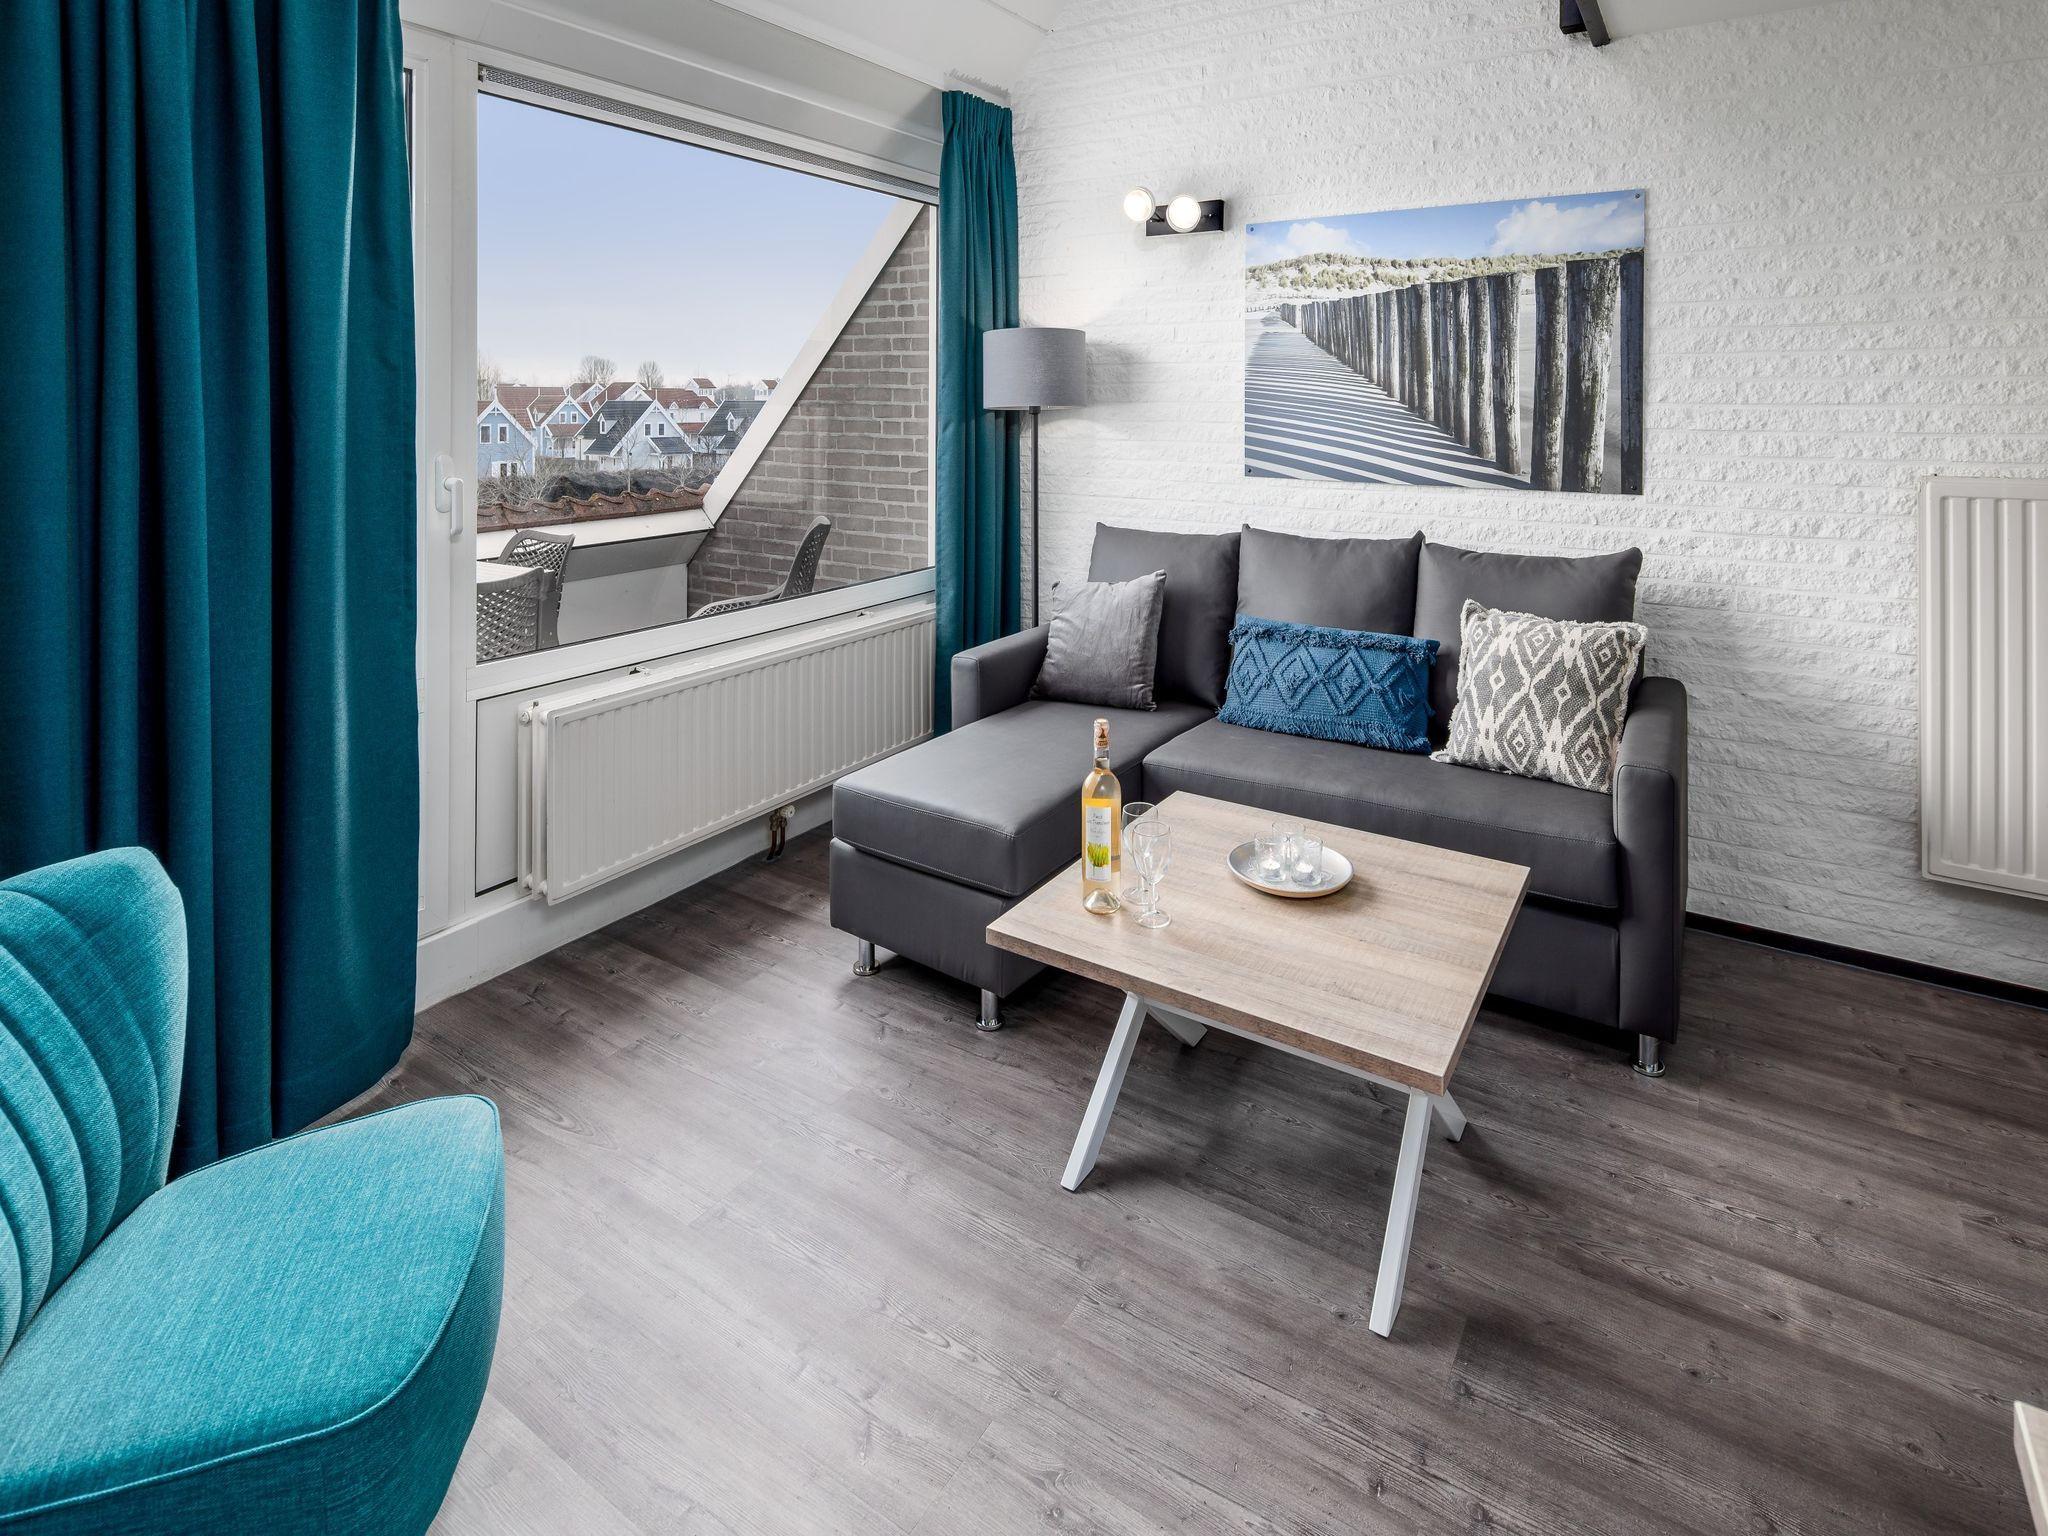 Gerestyld appartement voor vier personen op vakantiepark Aquadelta bij Grevelingenmeer